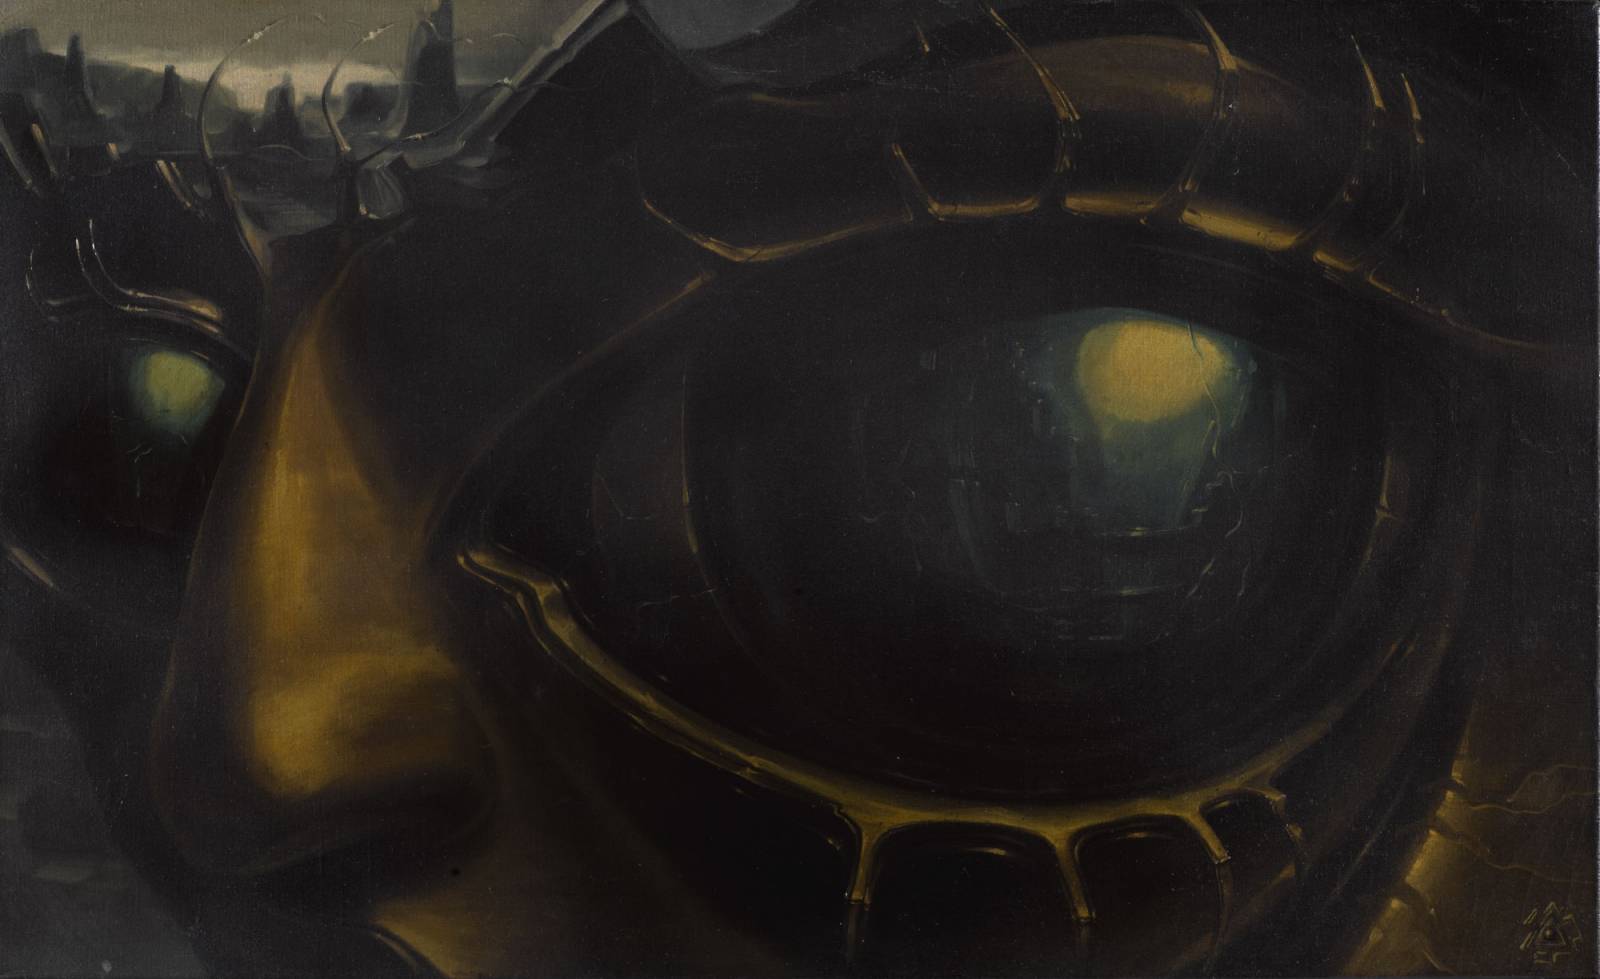 „Autoportret bez tytułu (Oko zagłady)”, sygnowany znakiem Hożej Moyry, 60 x 100 cm, olej na płótnie, 1985